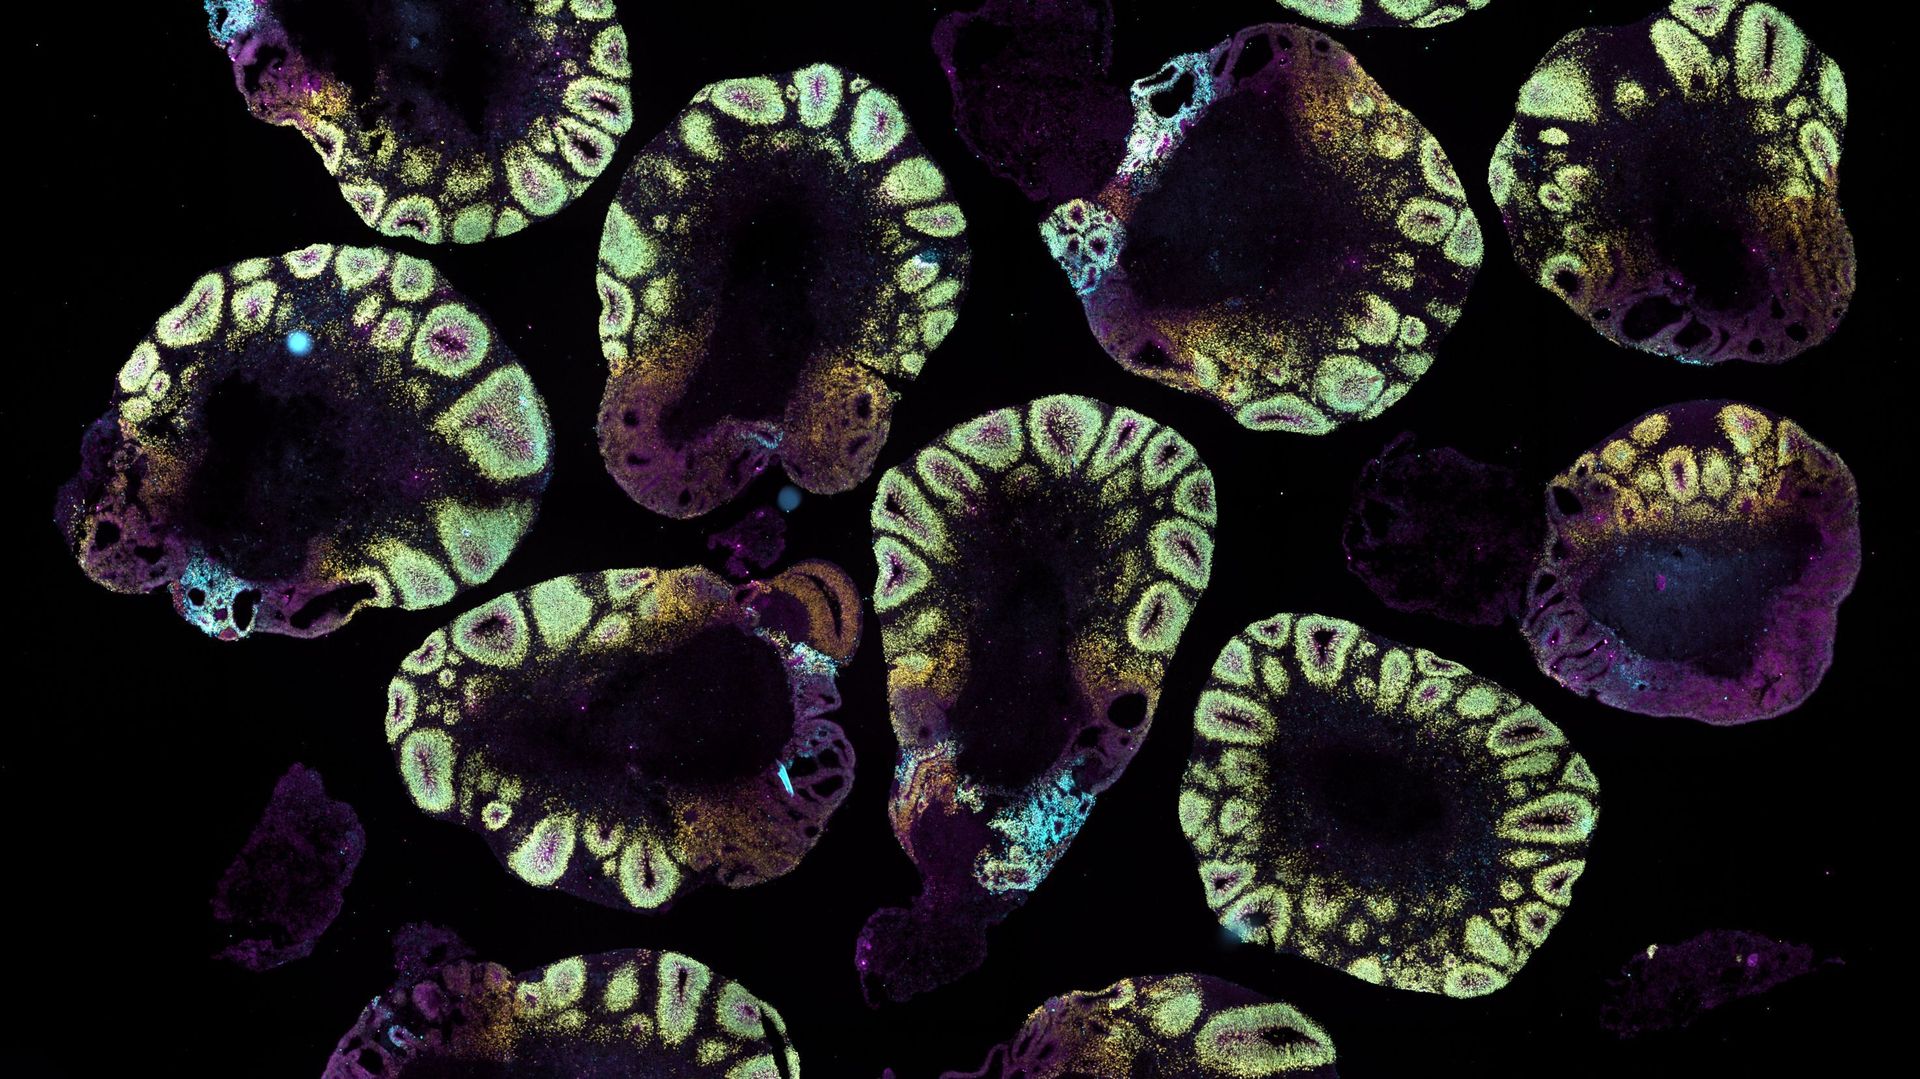 Sur cette deuxième image issue d’un autre groupe d’organoïdes, on reconnaît essentiellement les rosettes formées par les cellules progénitrices neurales.